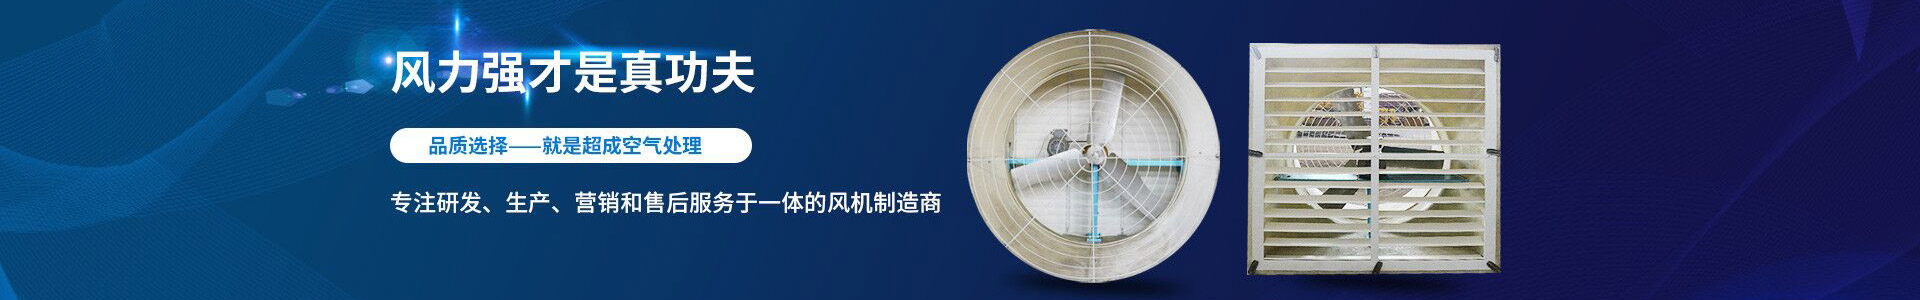 瓦楞成型机-江阴市超成空气处理设备有限公司